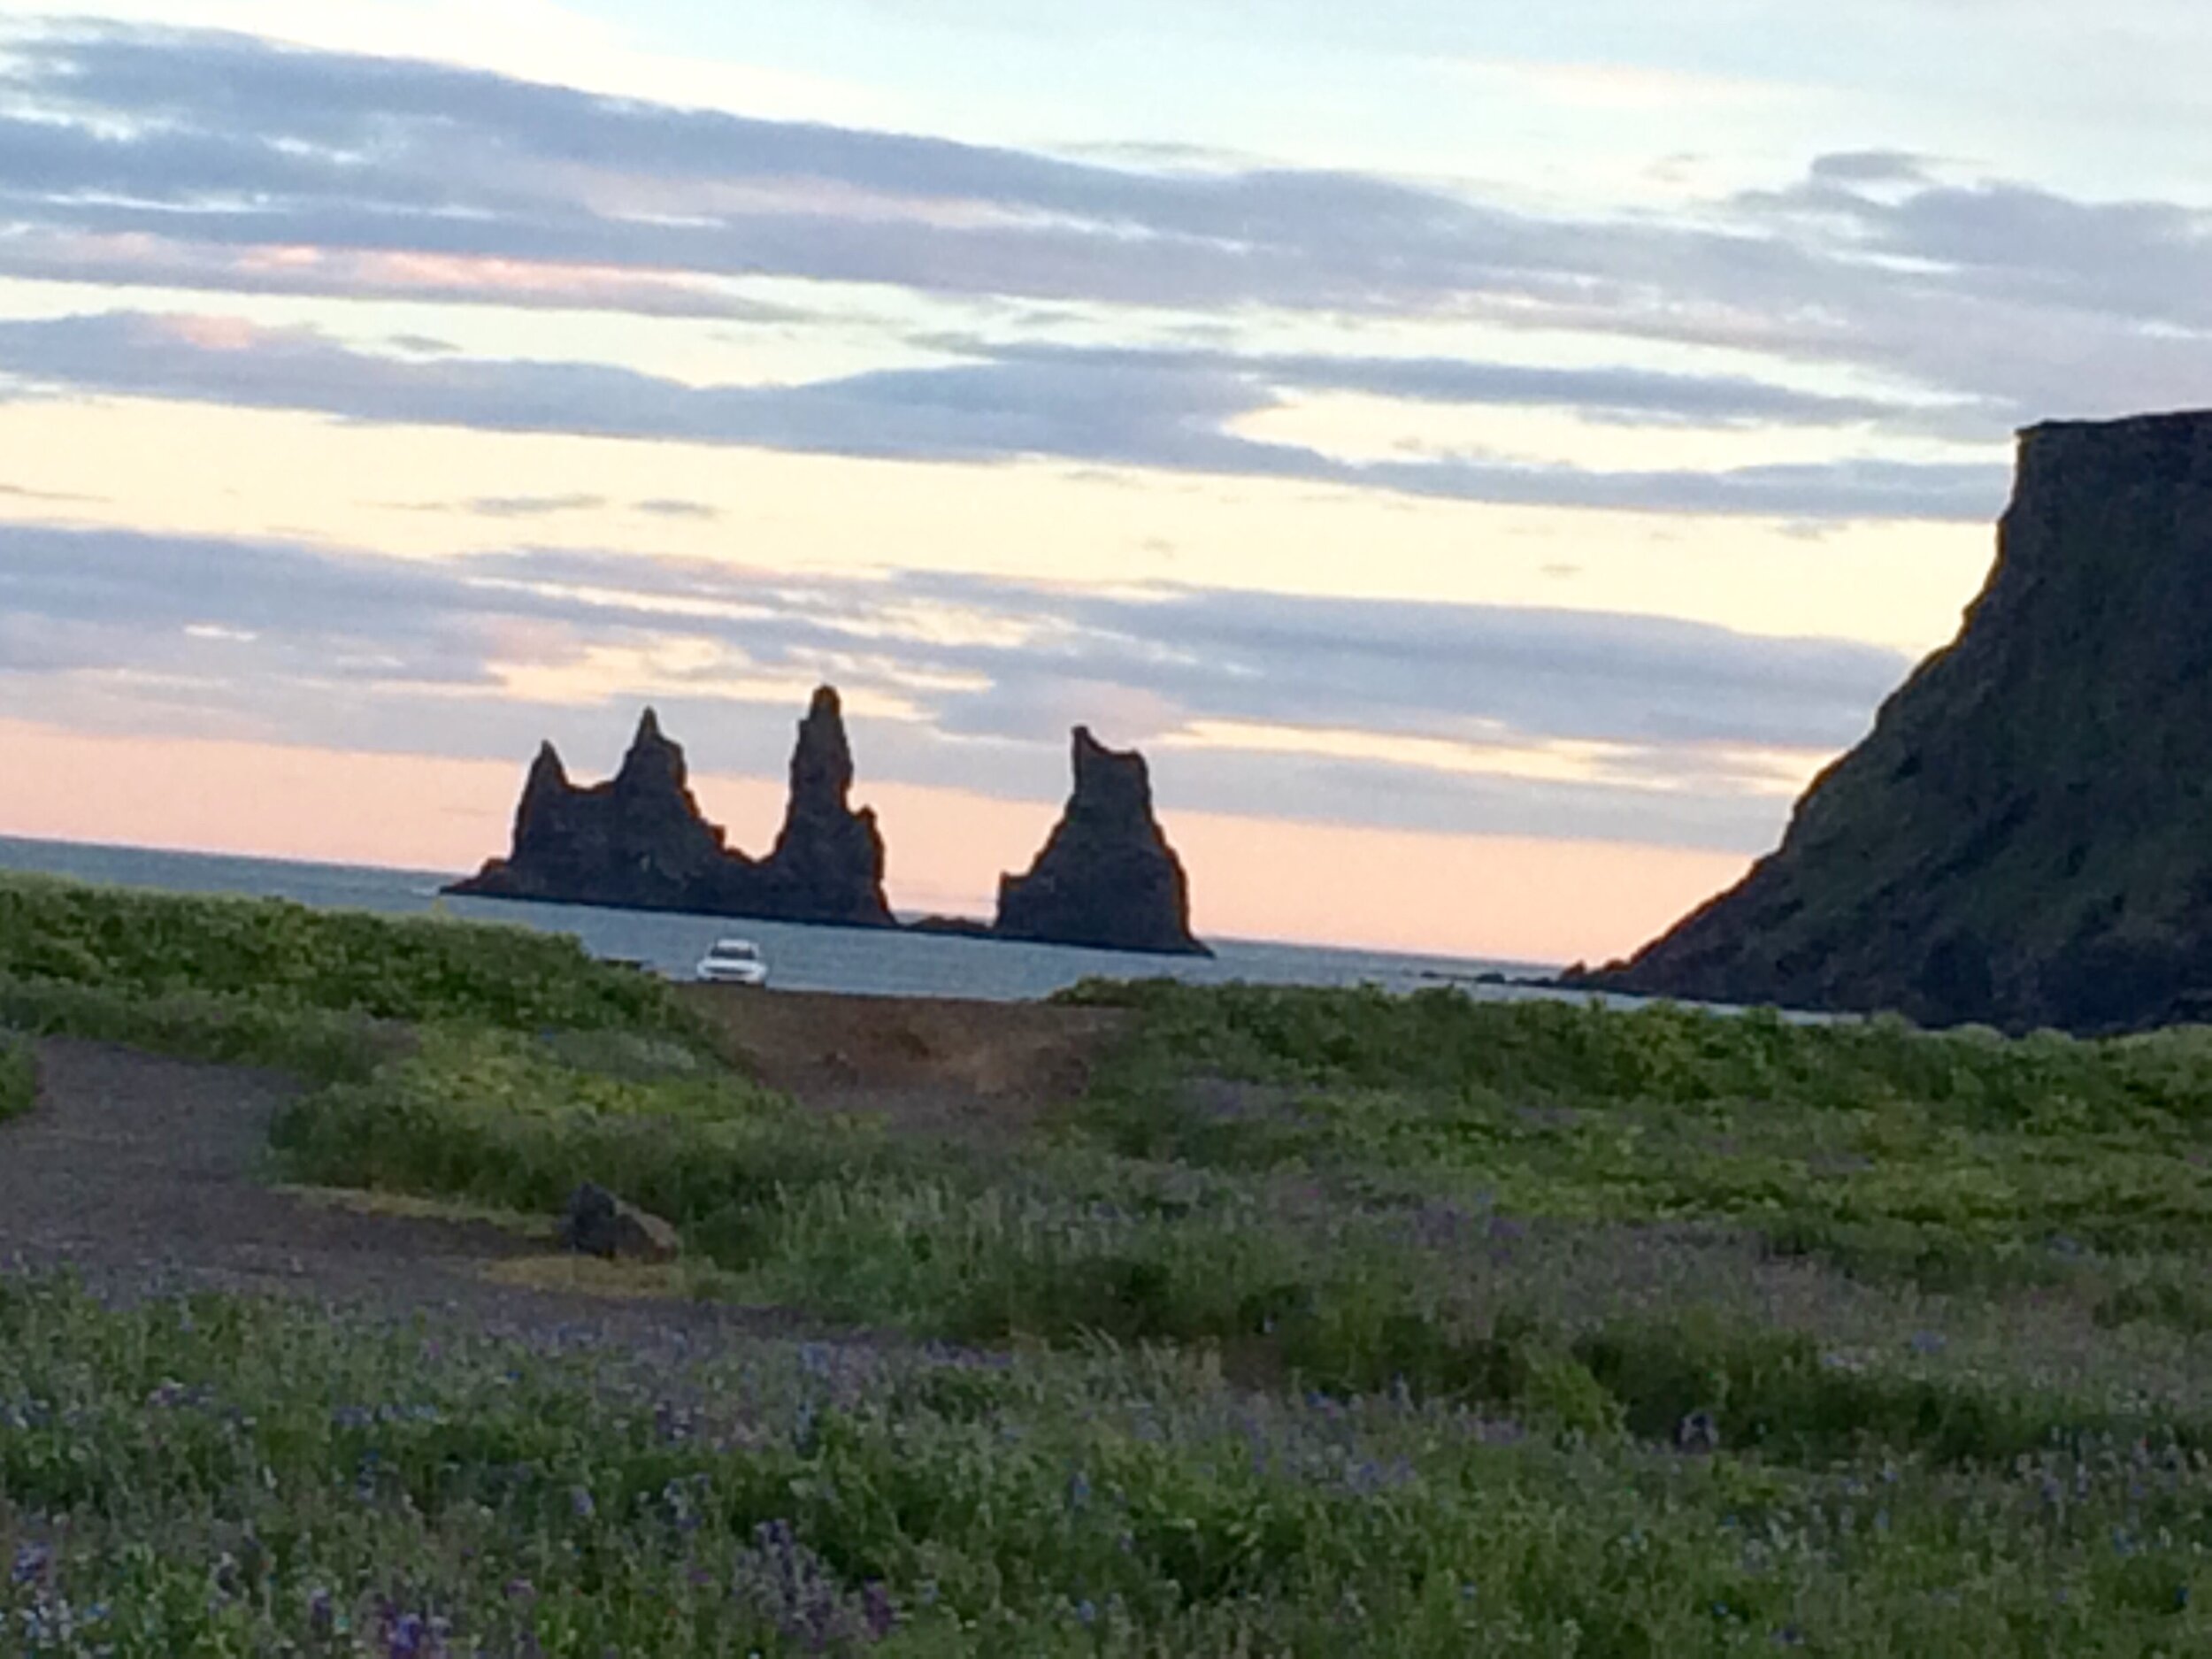 Iceland's unique beaches